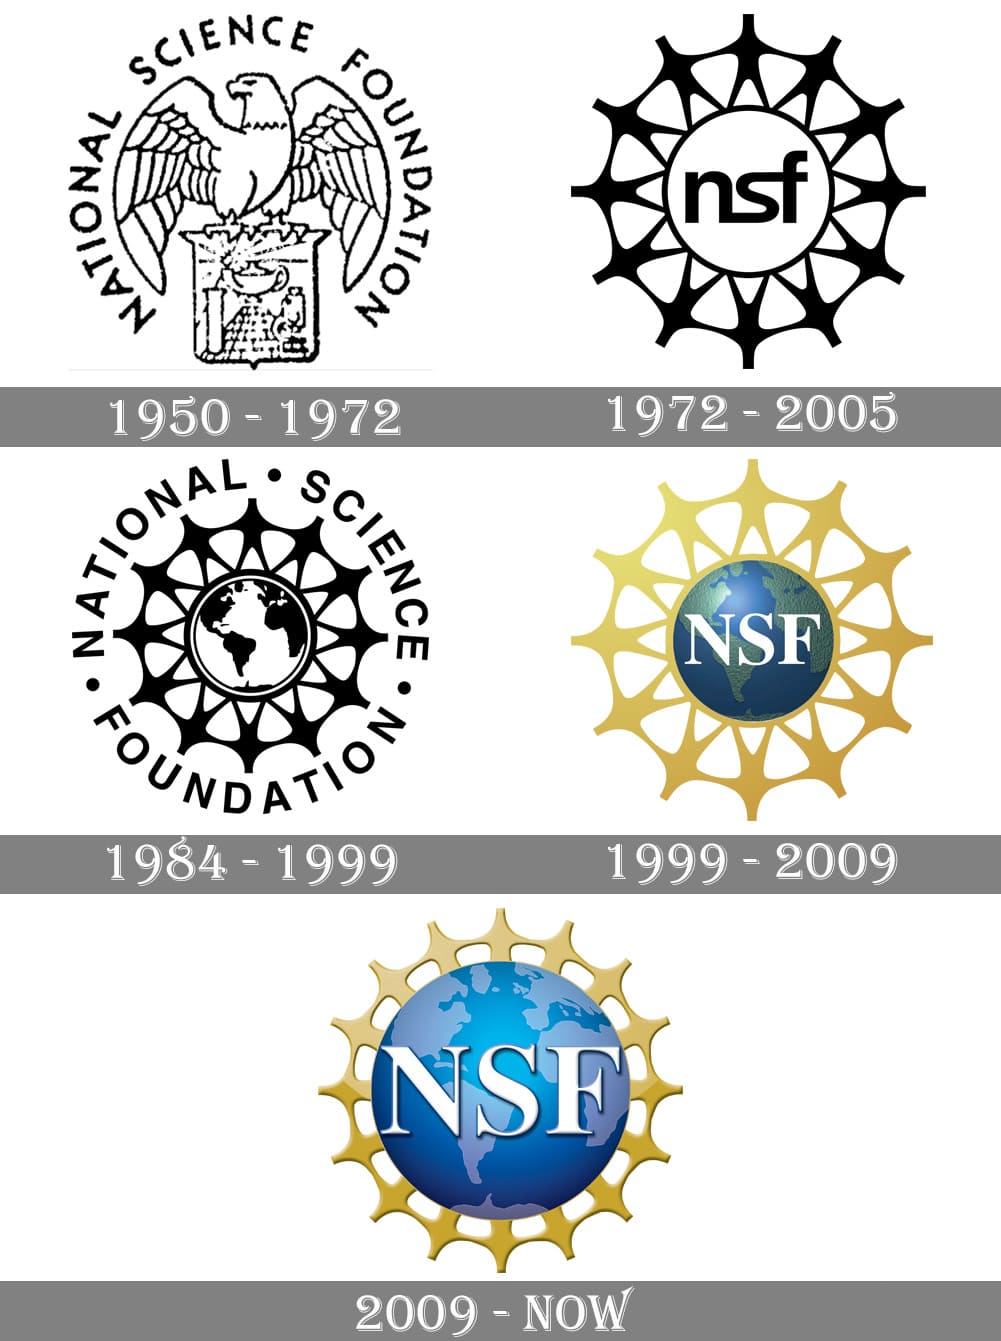 Mẫu thiết kế logo về giáo dục của NATIONAL SCIENCE FOUNDATION